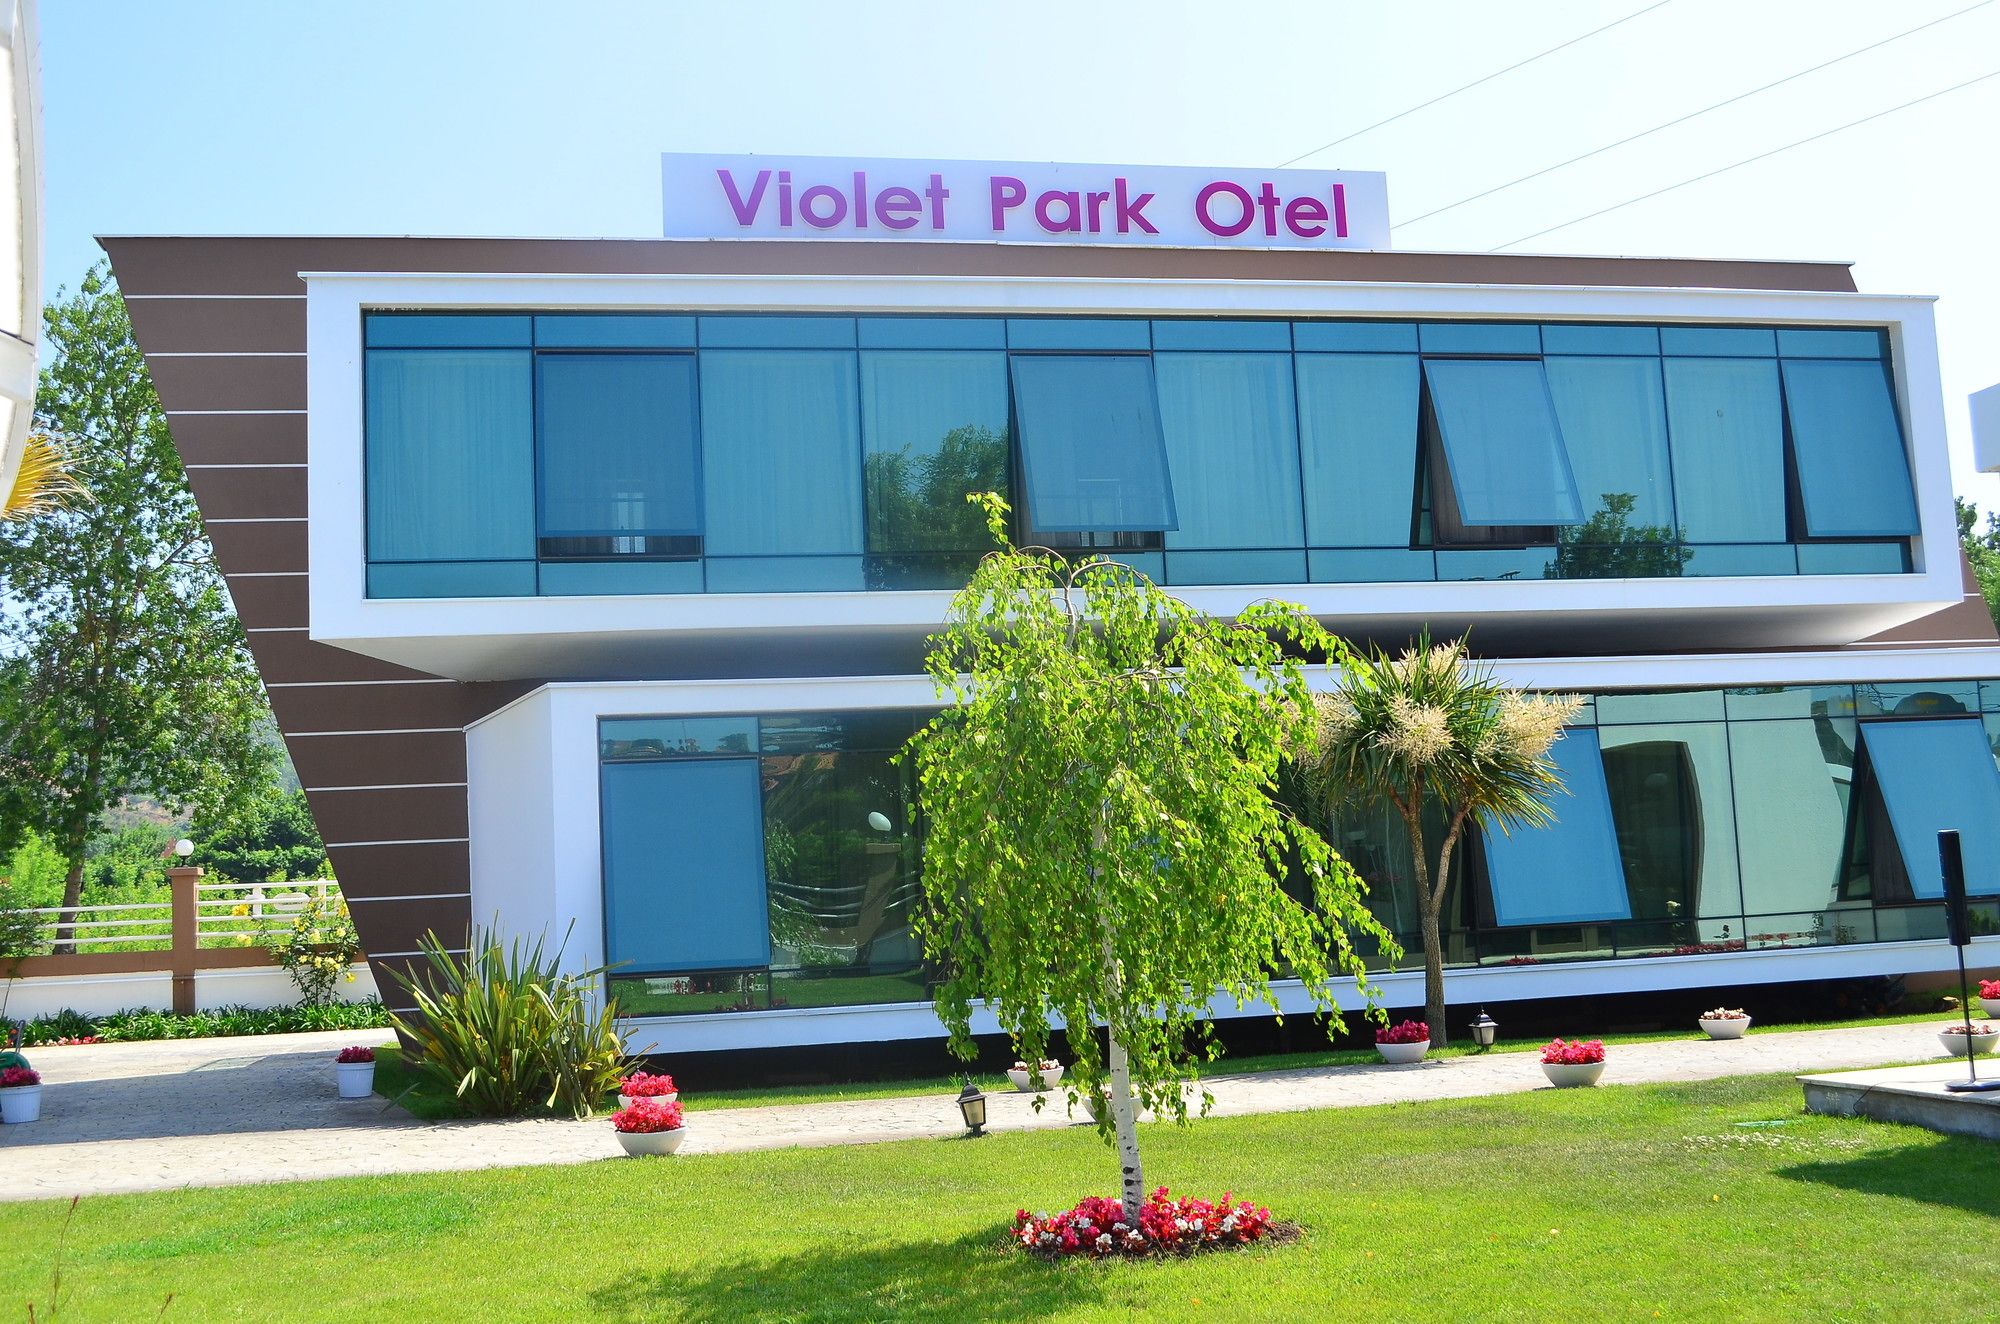 Violet Park Otel (Violet Park Hotel)